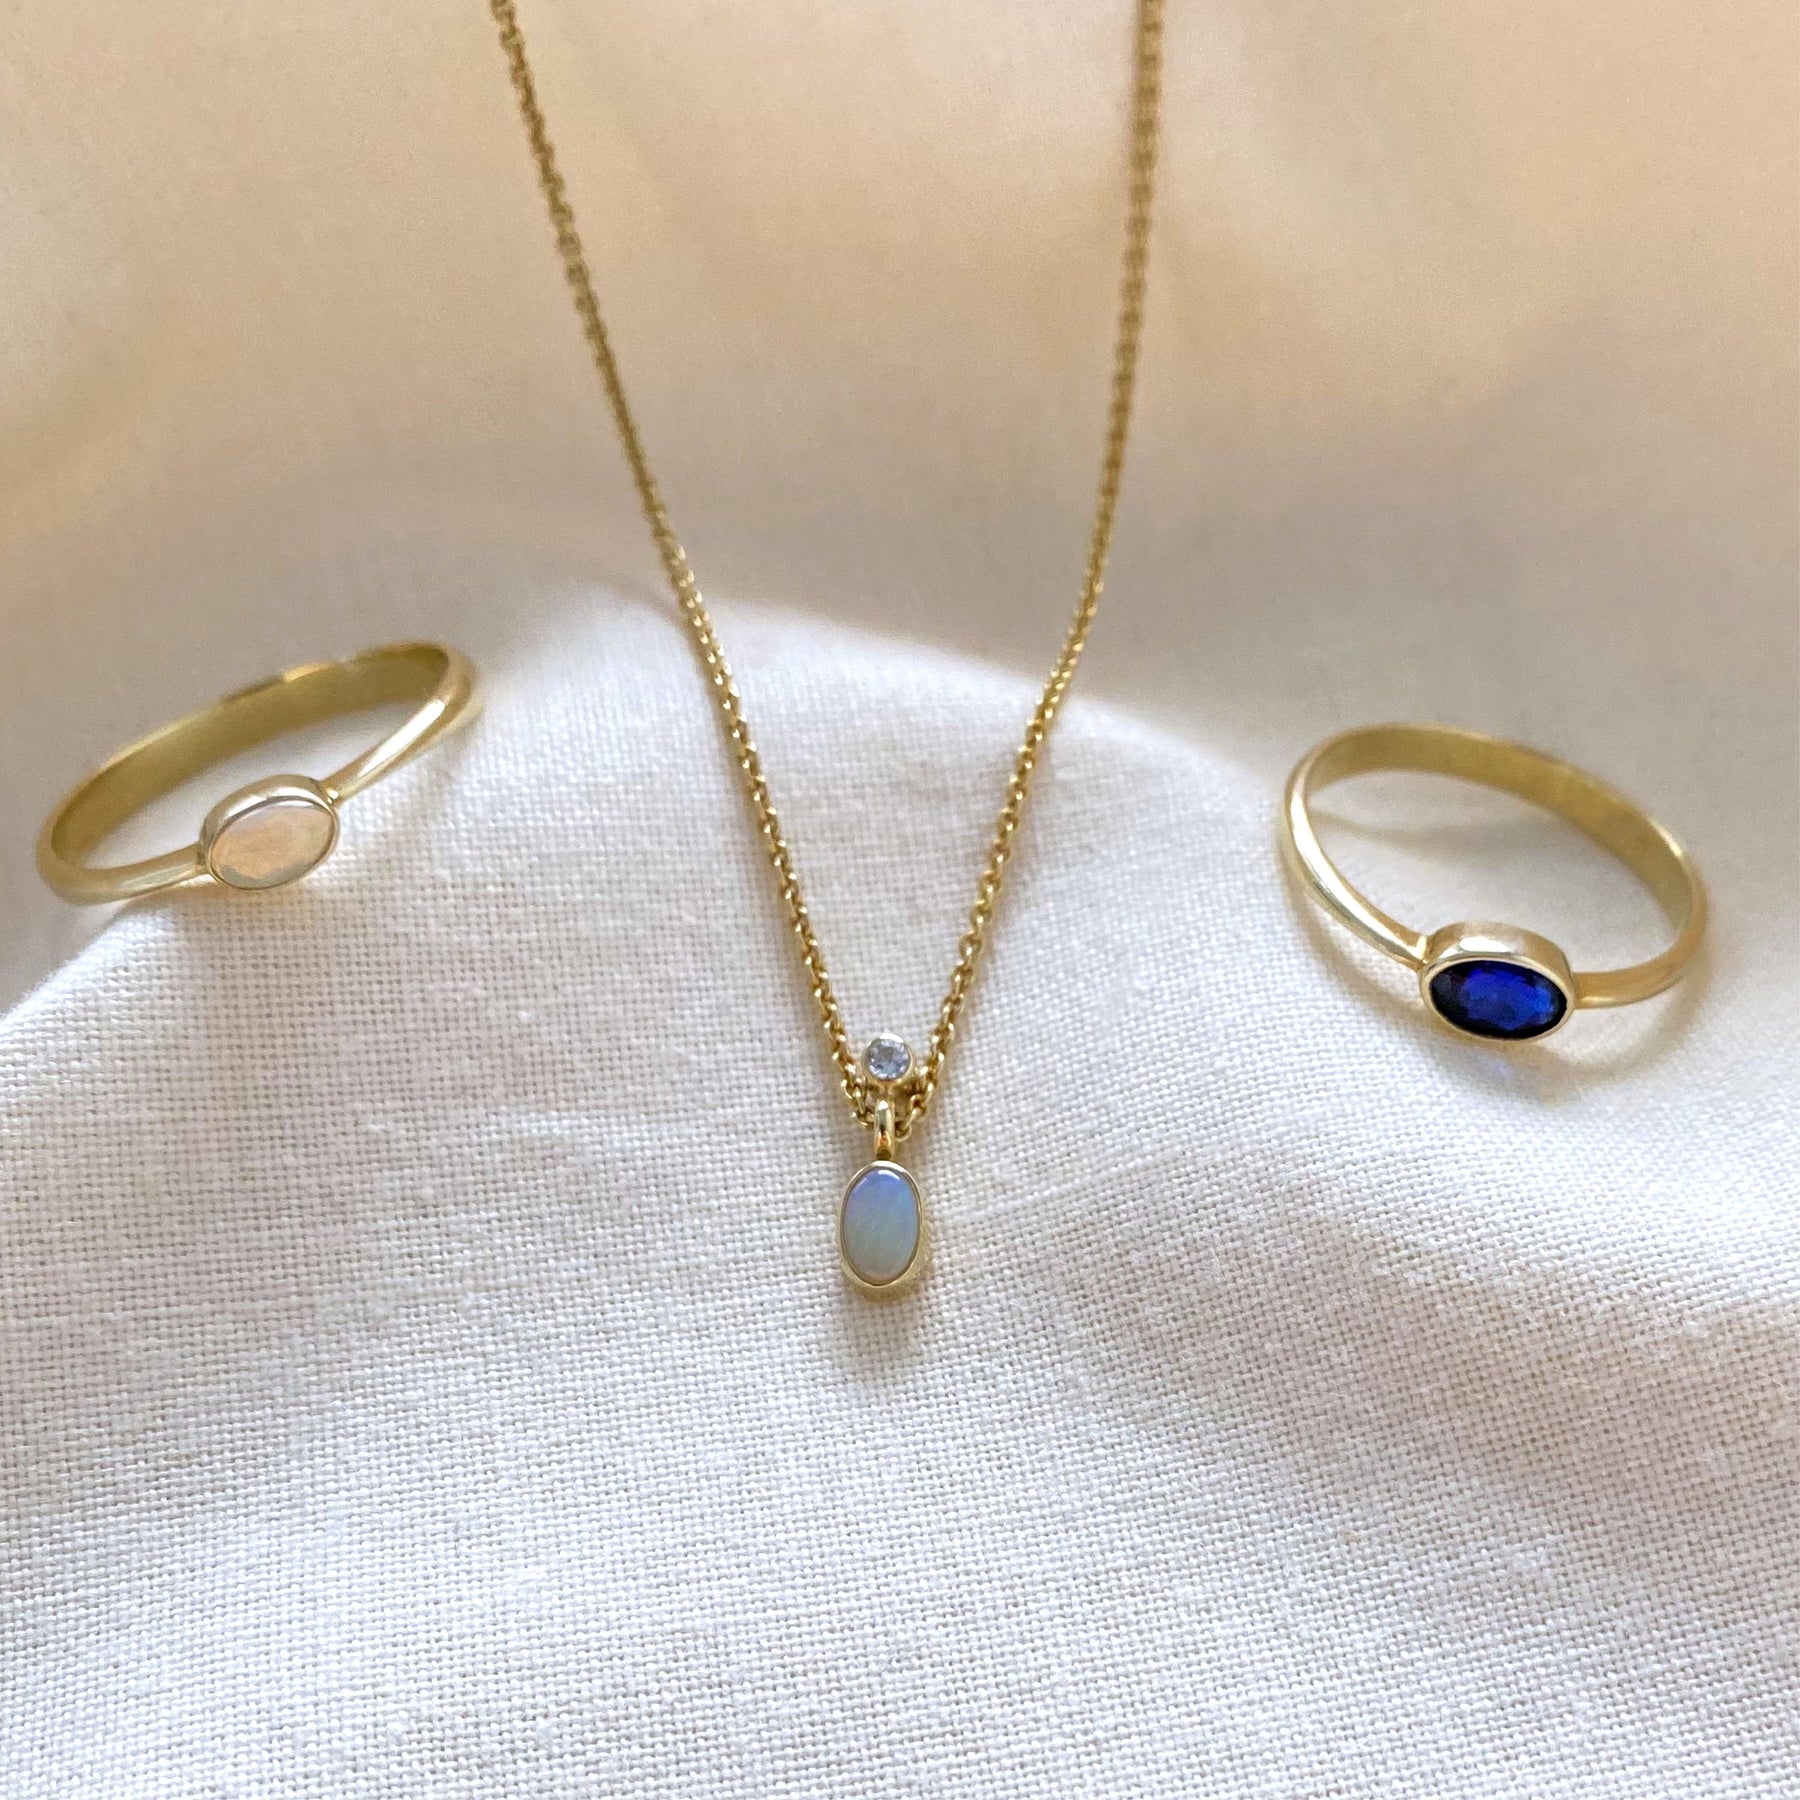 Goldkette 585, Gloldkette mit Opal und Brillant, 585er oder 750er Gelbgold, minimale Halskette, Geschenk, 14 Karat